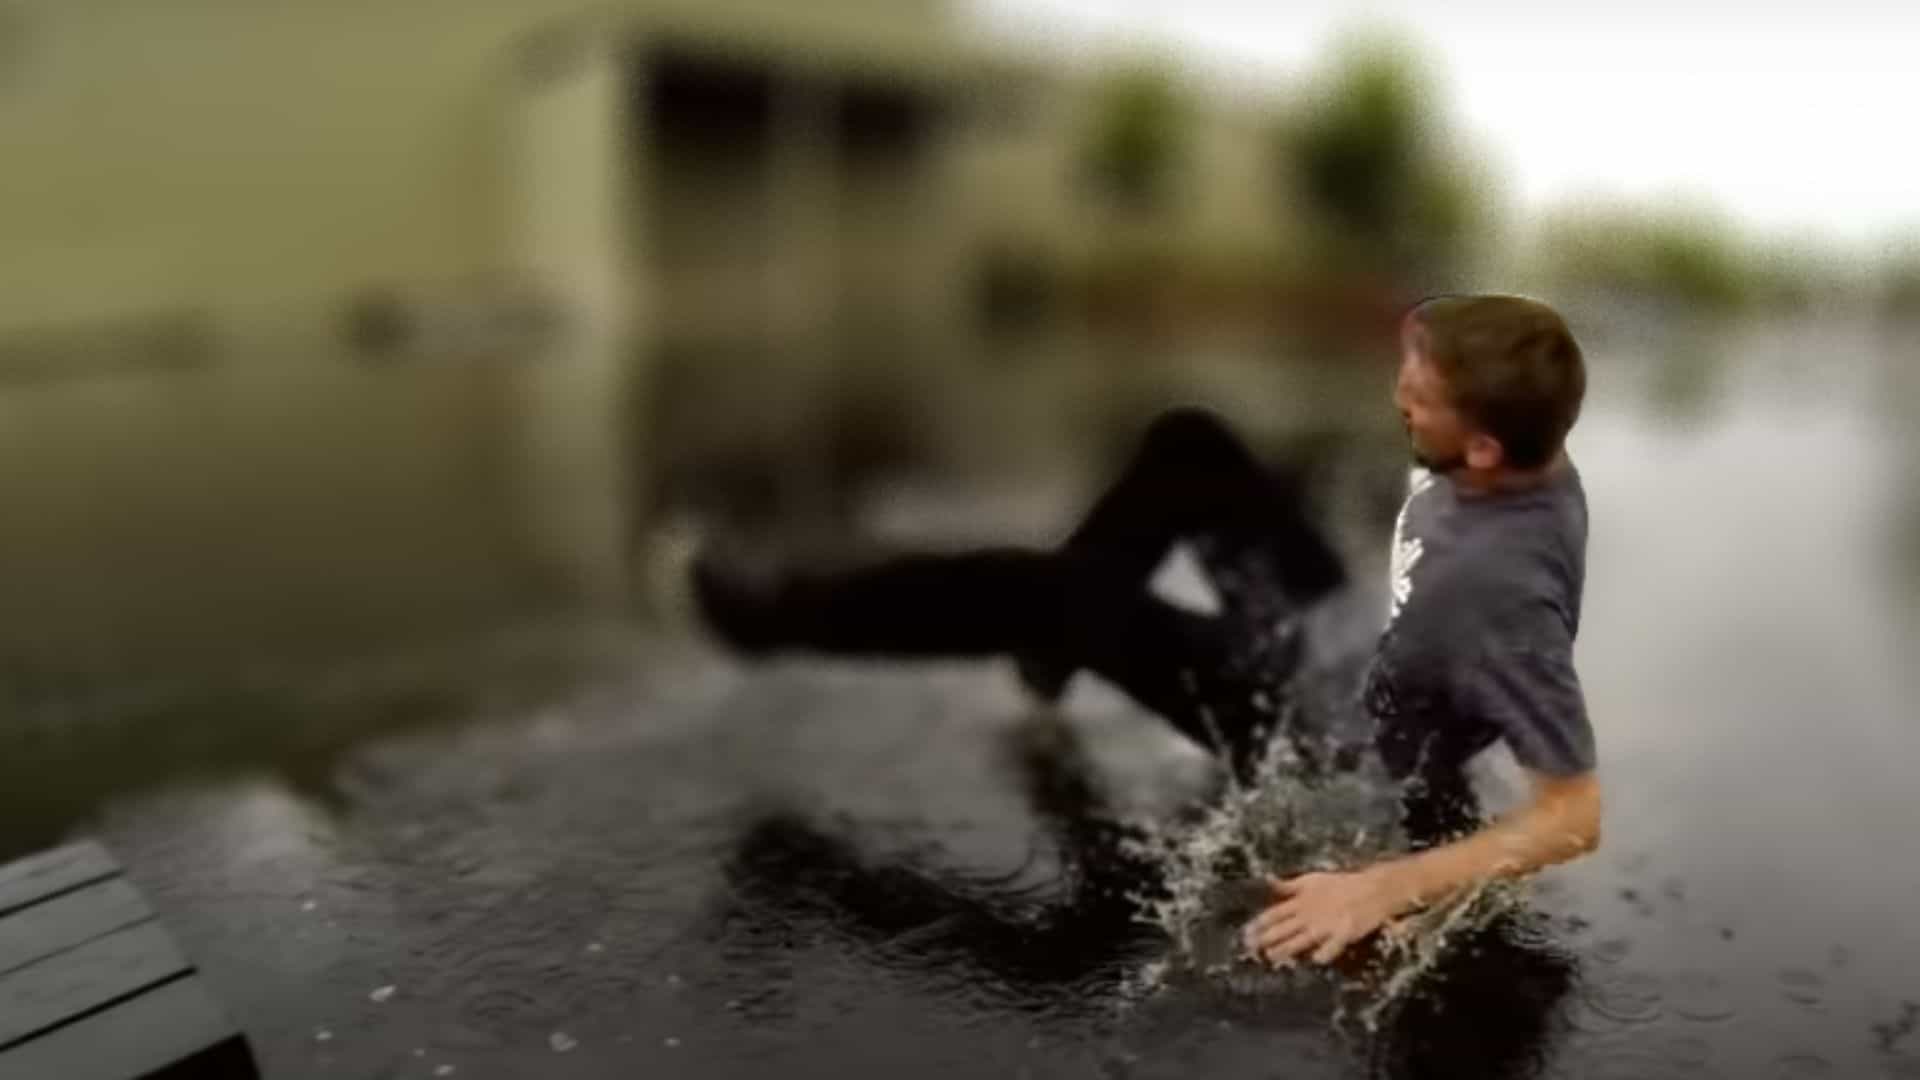 skateboarder fell down while skateboarding in rain